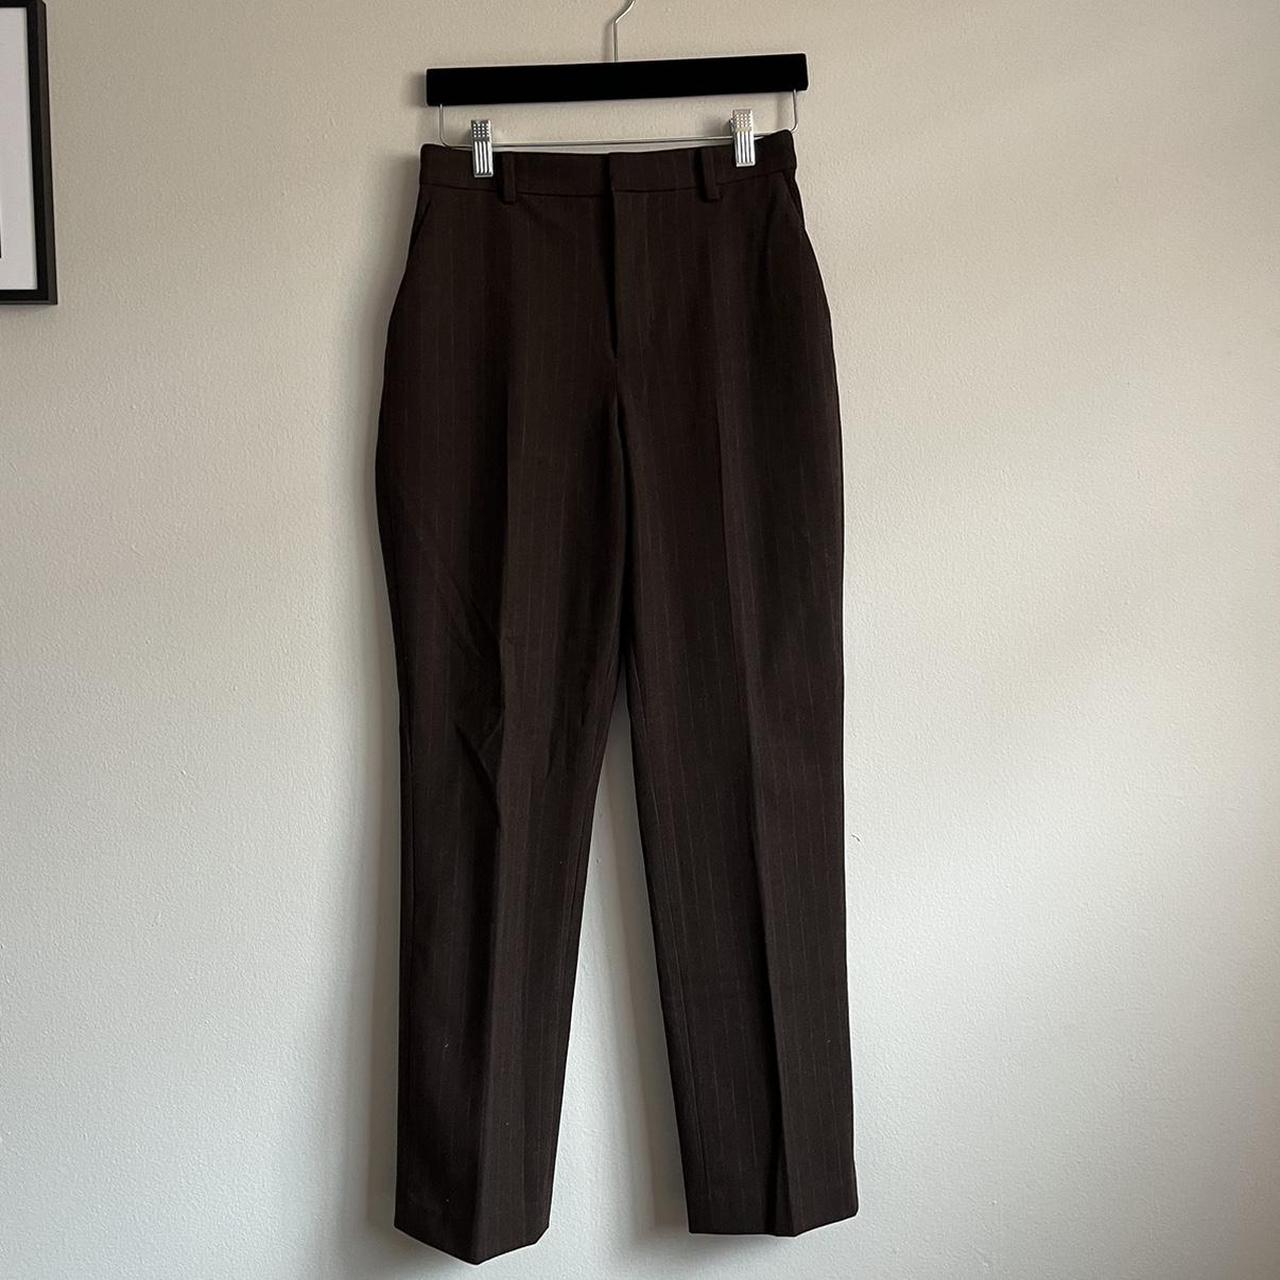 UNIQLO Women's Brown Trousers | Depop